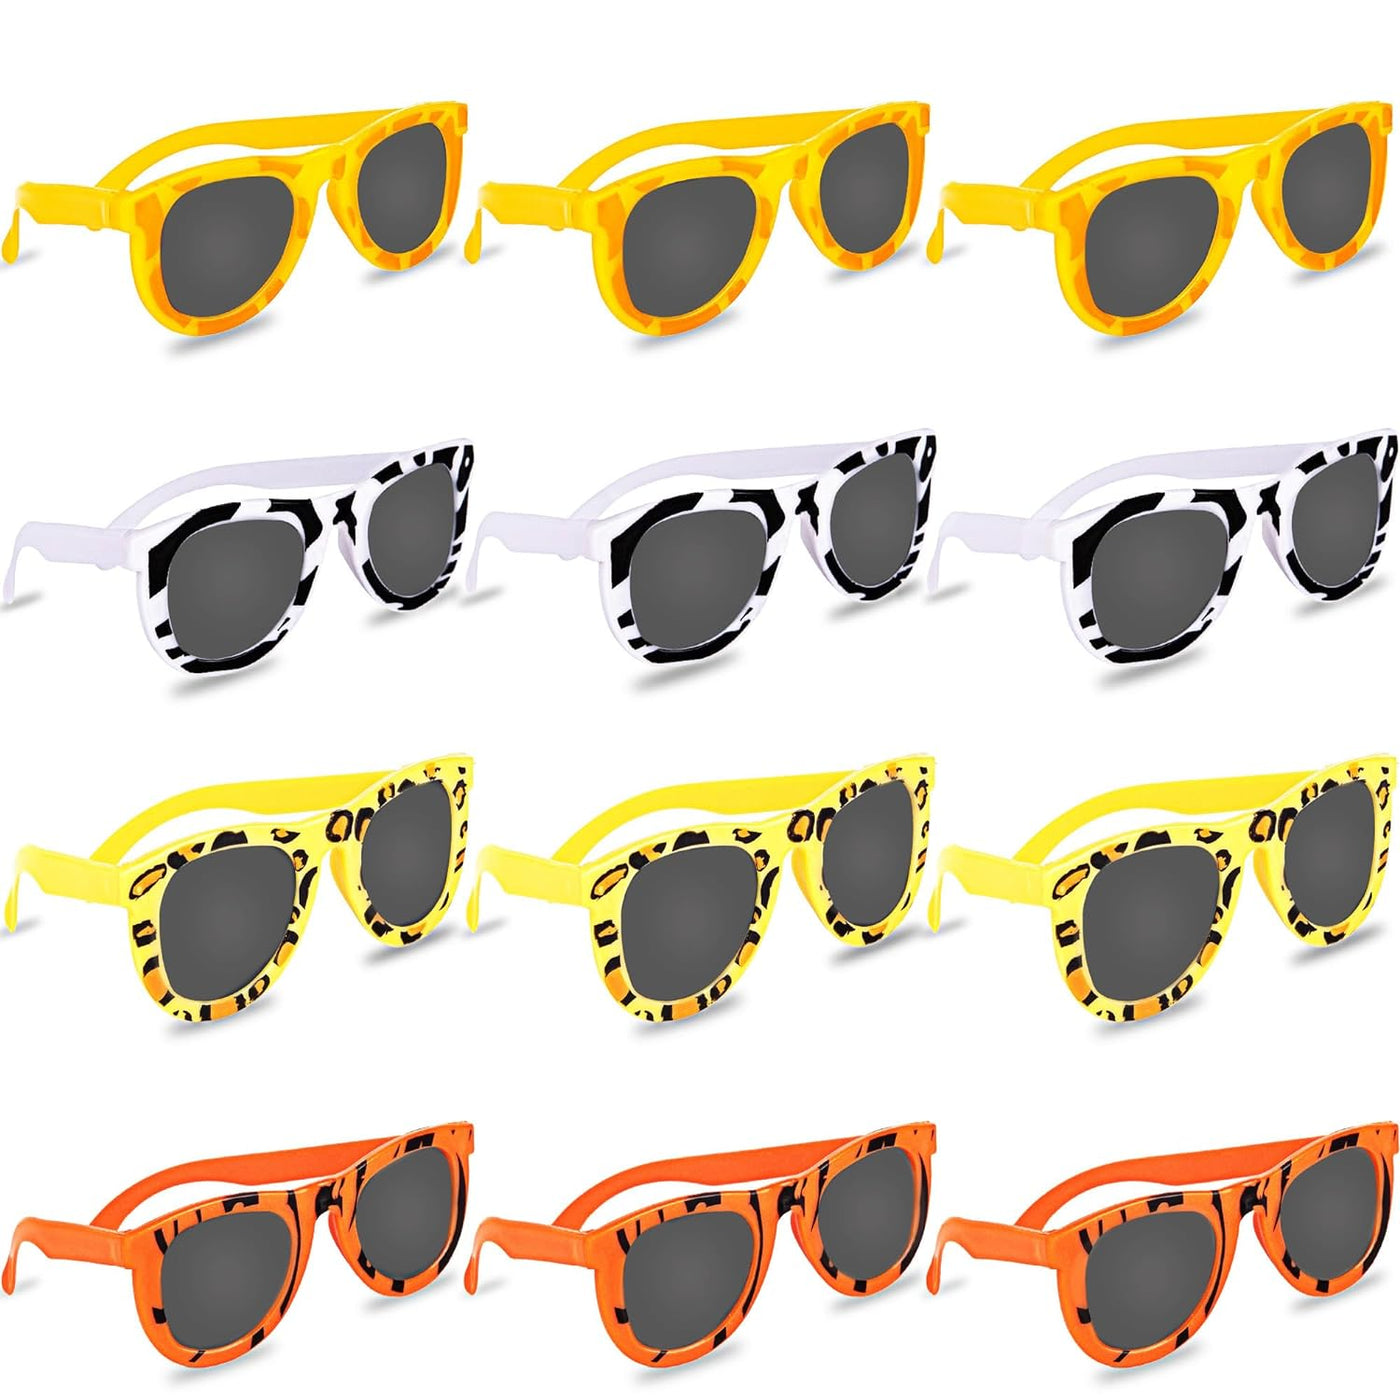 Safari Sunglasses - Pack of 12